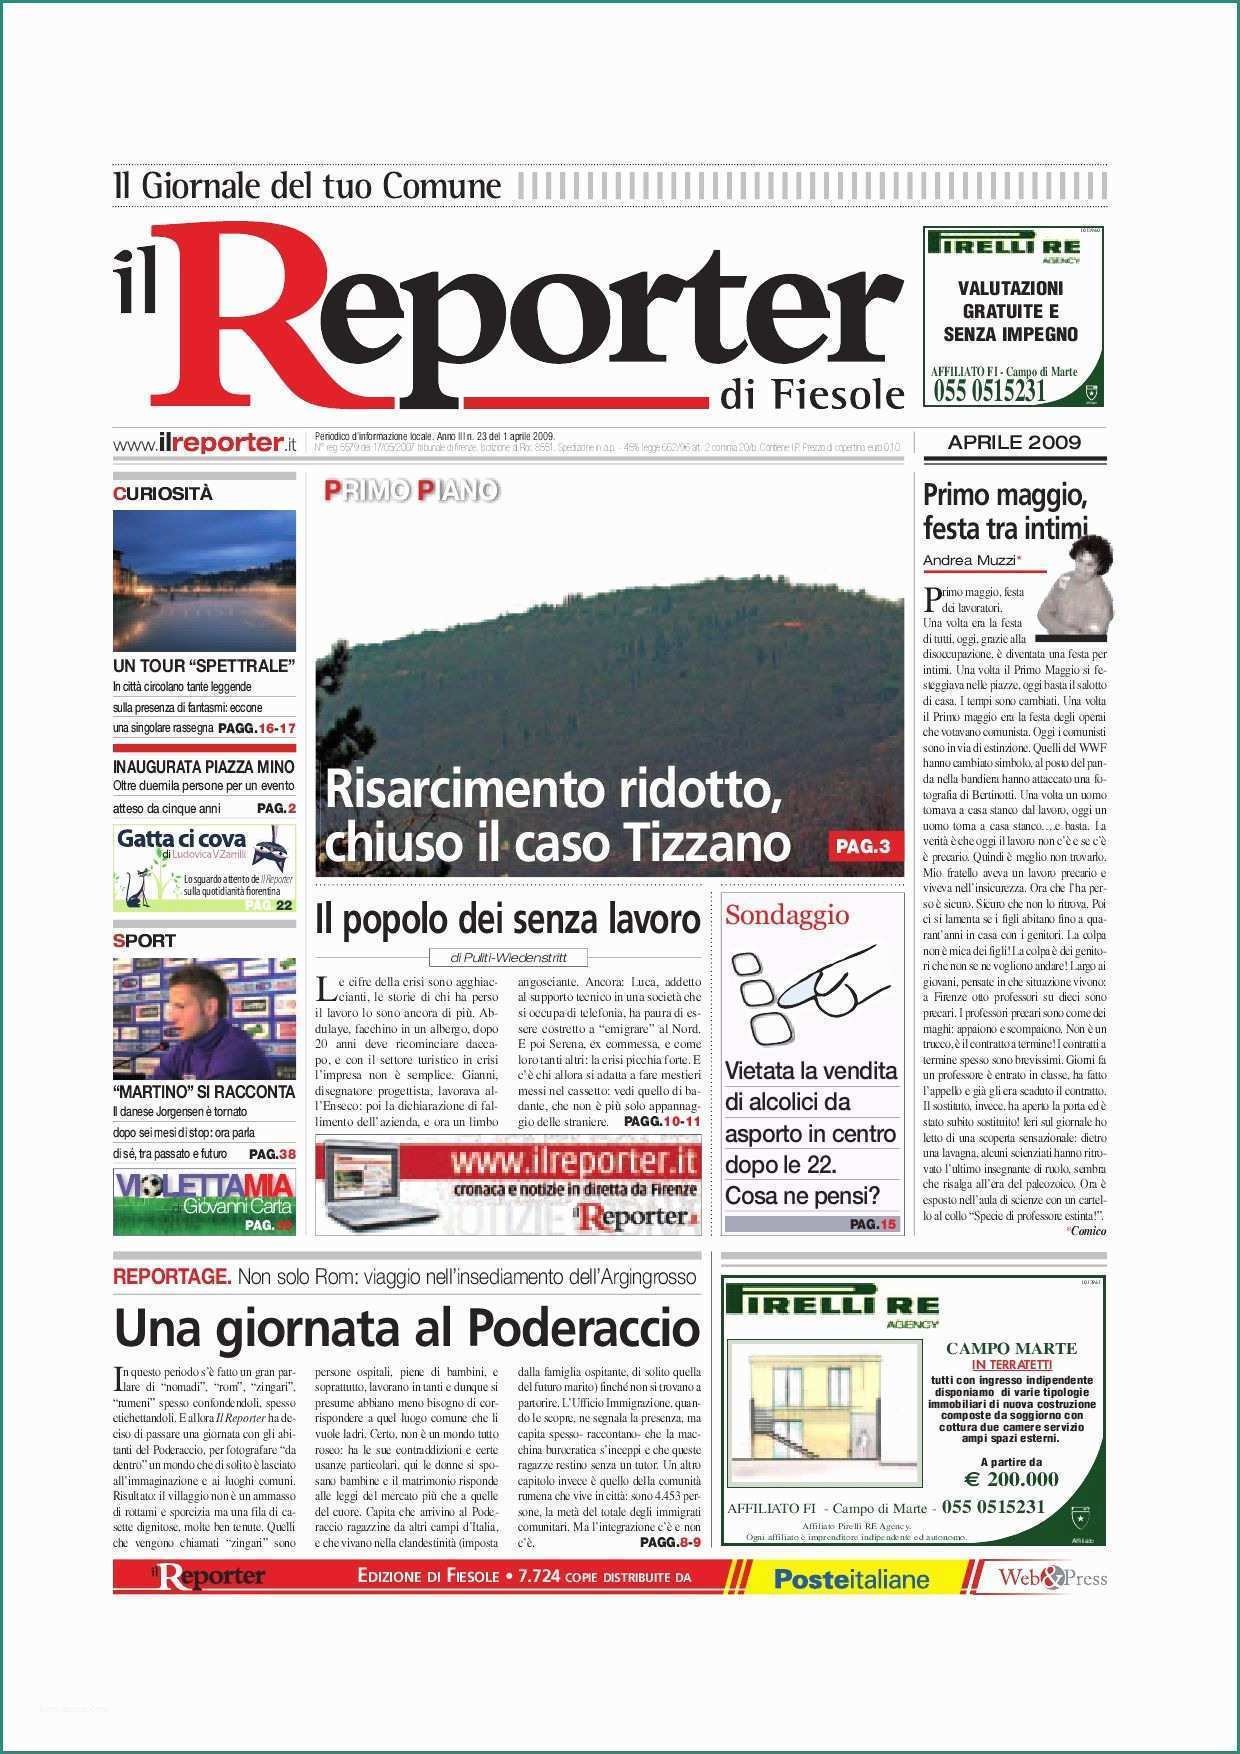 Fiat Panda Consumi Reali E Il Reporter Fiesole Aprile 2009 by Ilreporter issuu